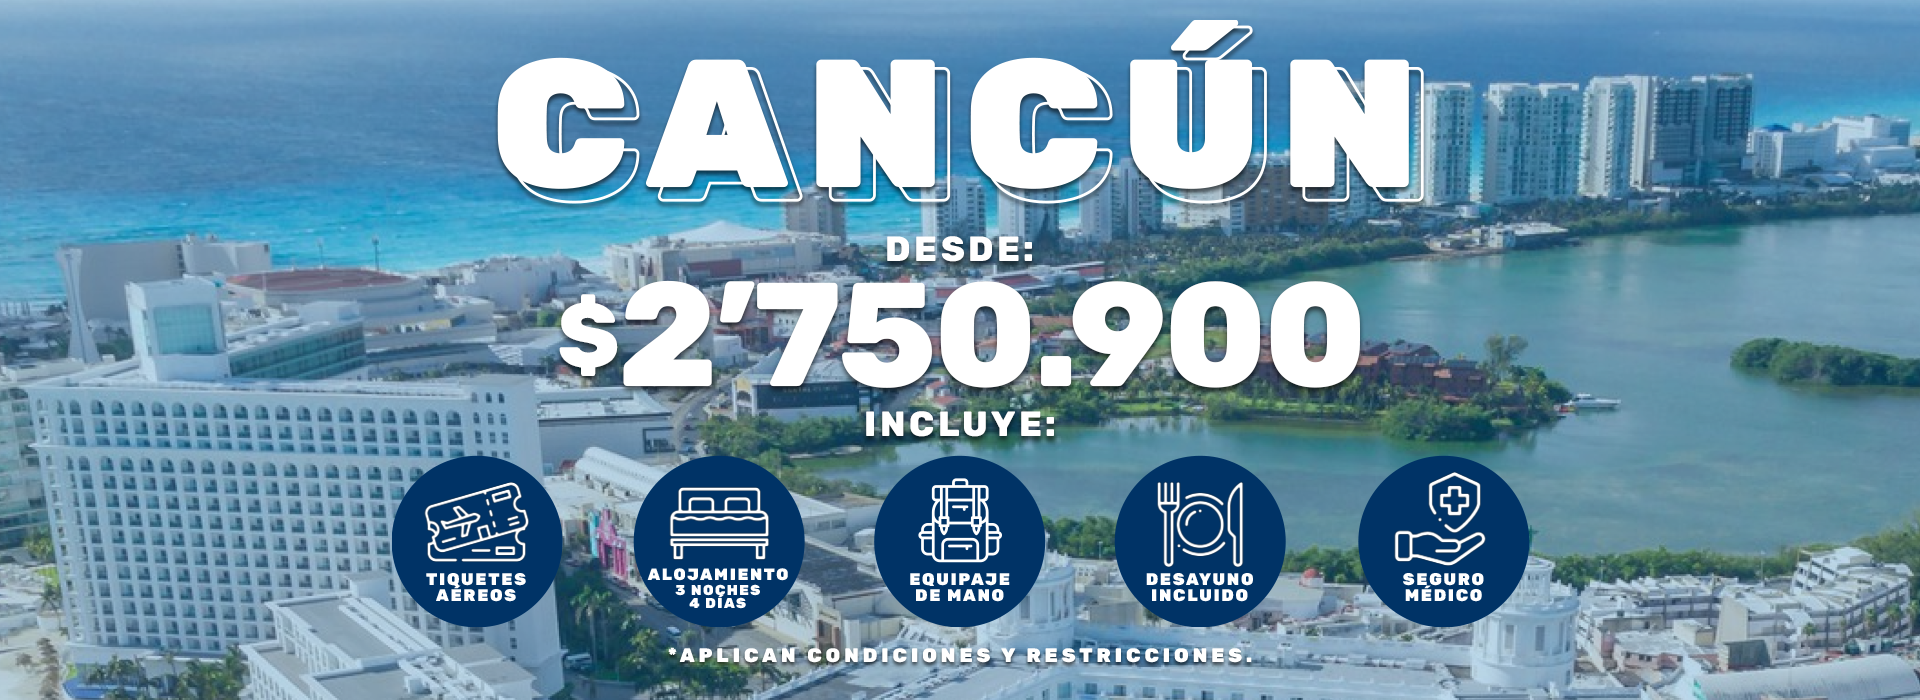 Paquete a Cancún: Vuelo + Hotel